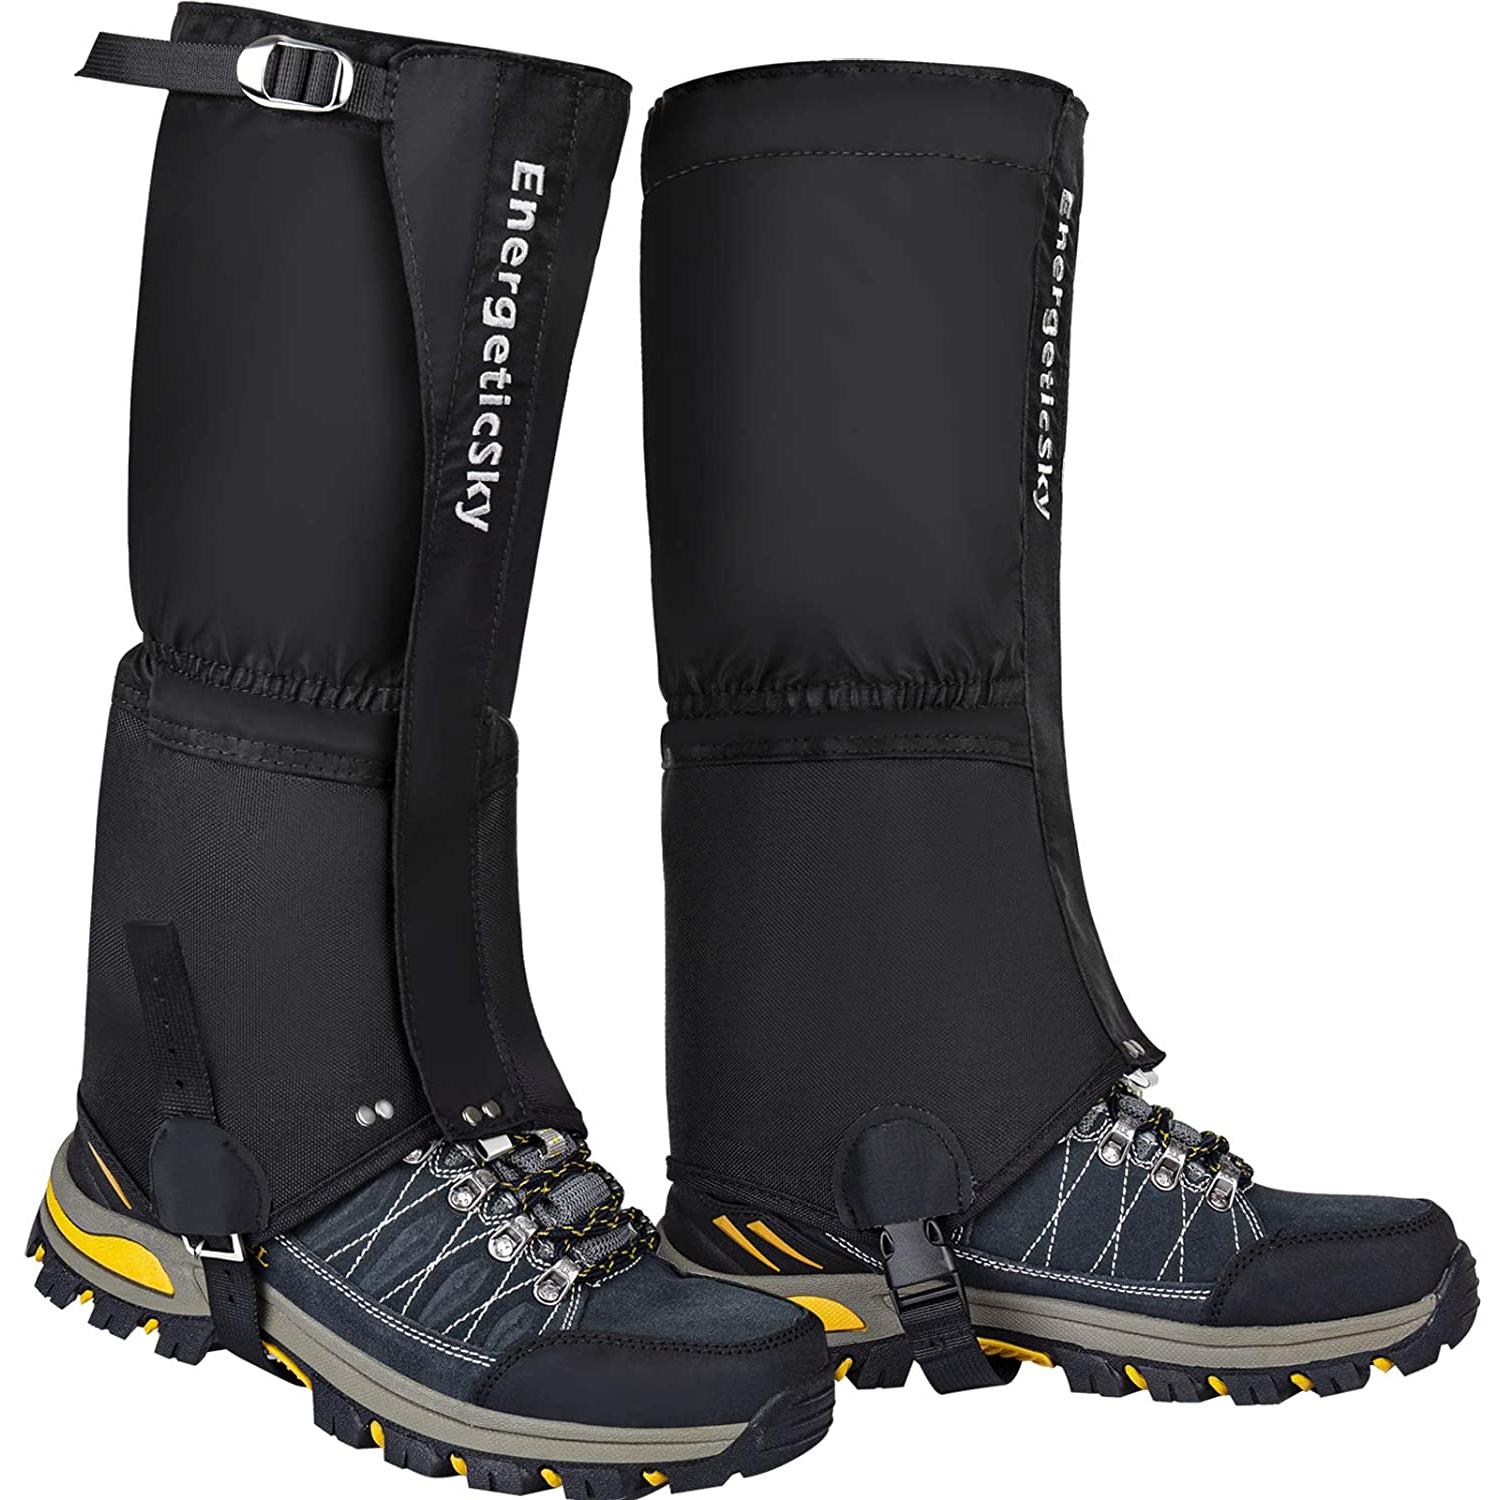 Leg Gaiters - Waterproof, Breathable